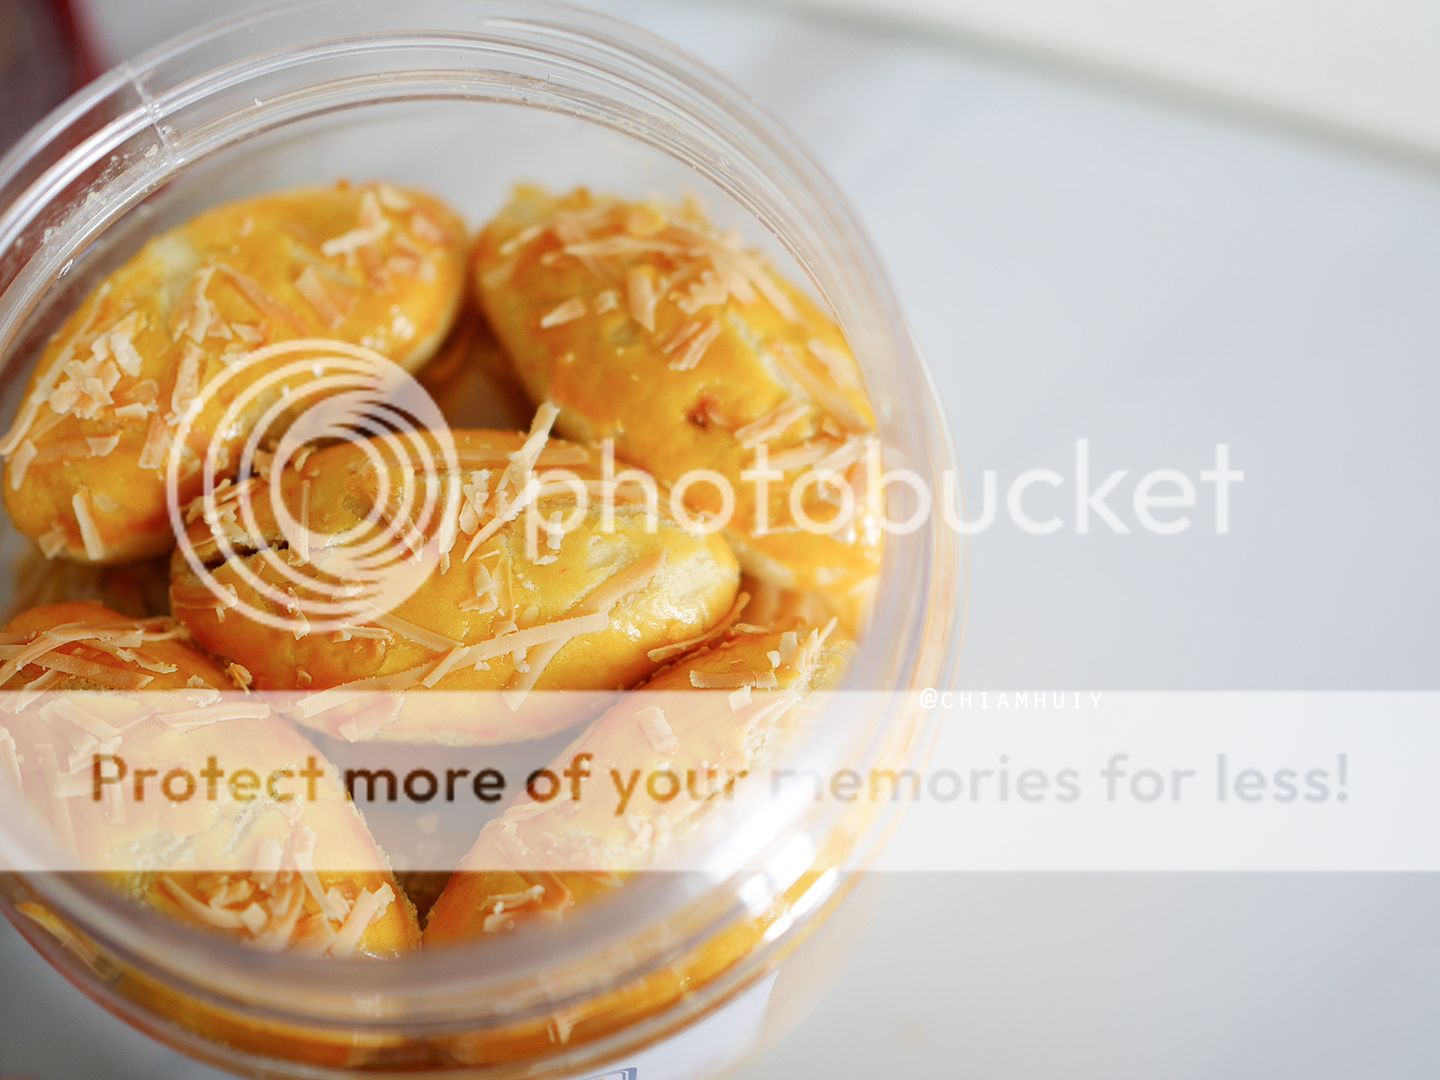  photo cheese pineapple tarts singapore.jpg